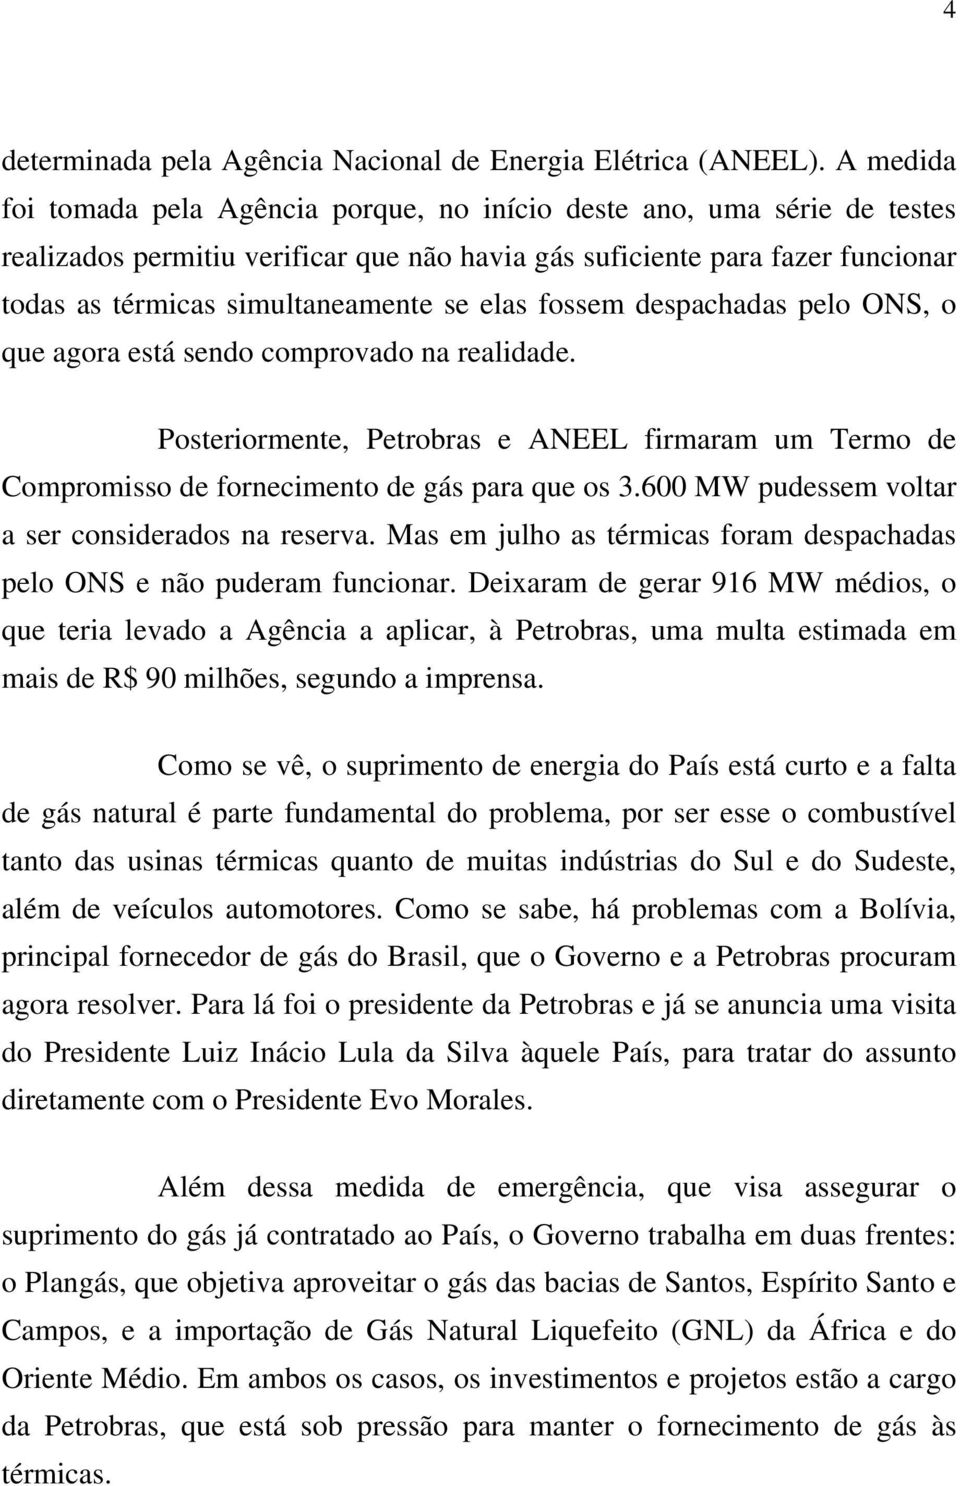 elas fossem despachadas pelo ONS, o que agora está sendo comprovado na realidade. Posteriormente, Petrobras e ANEEL firmaram um Termo de Compromisso de fornecimento de gás para que os 3.